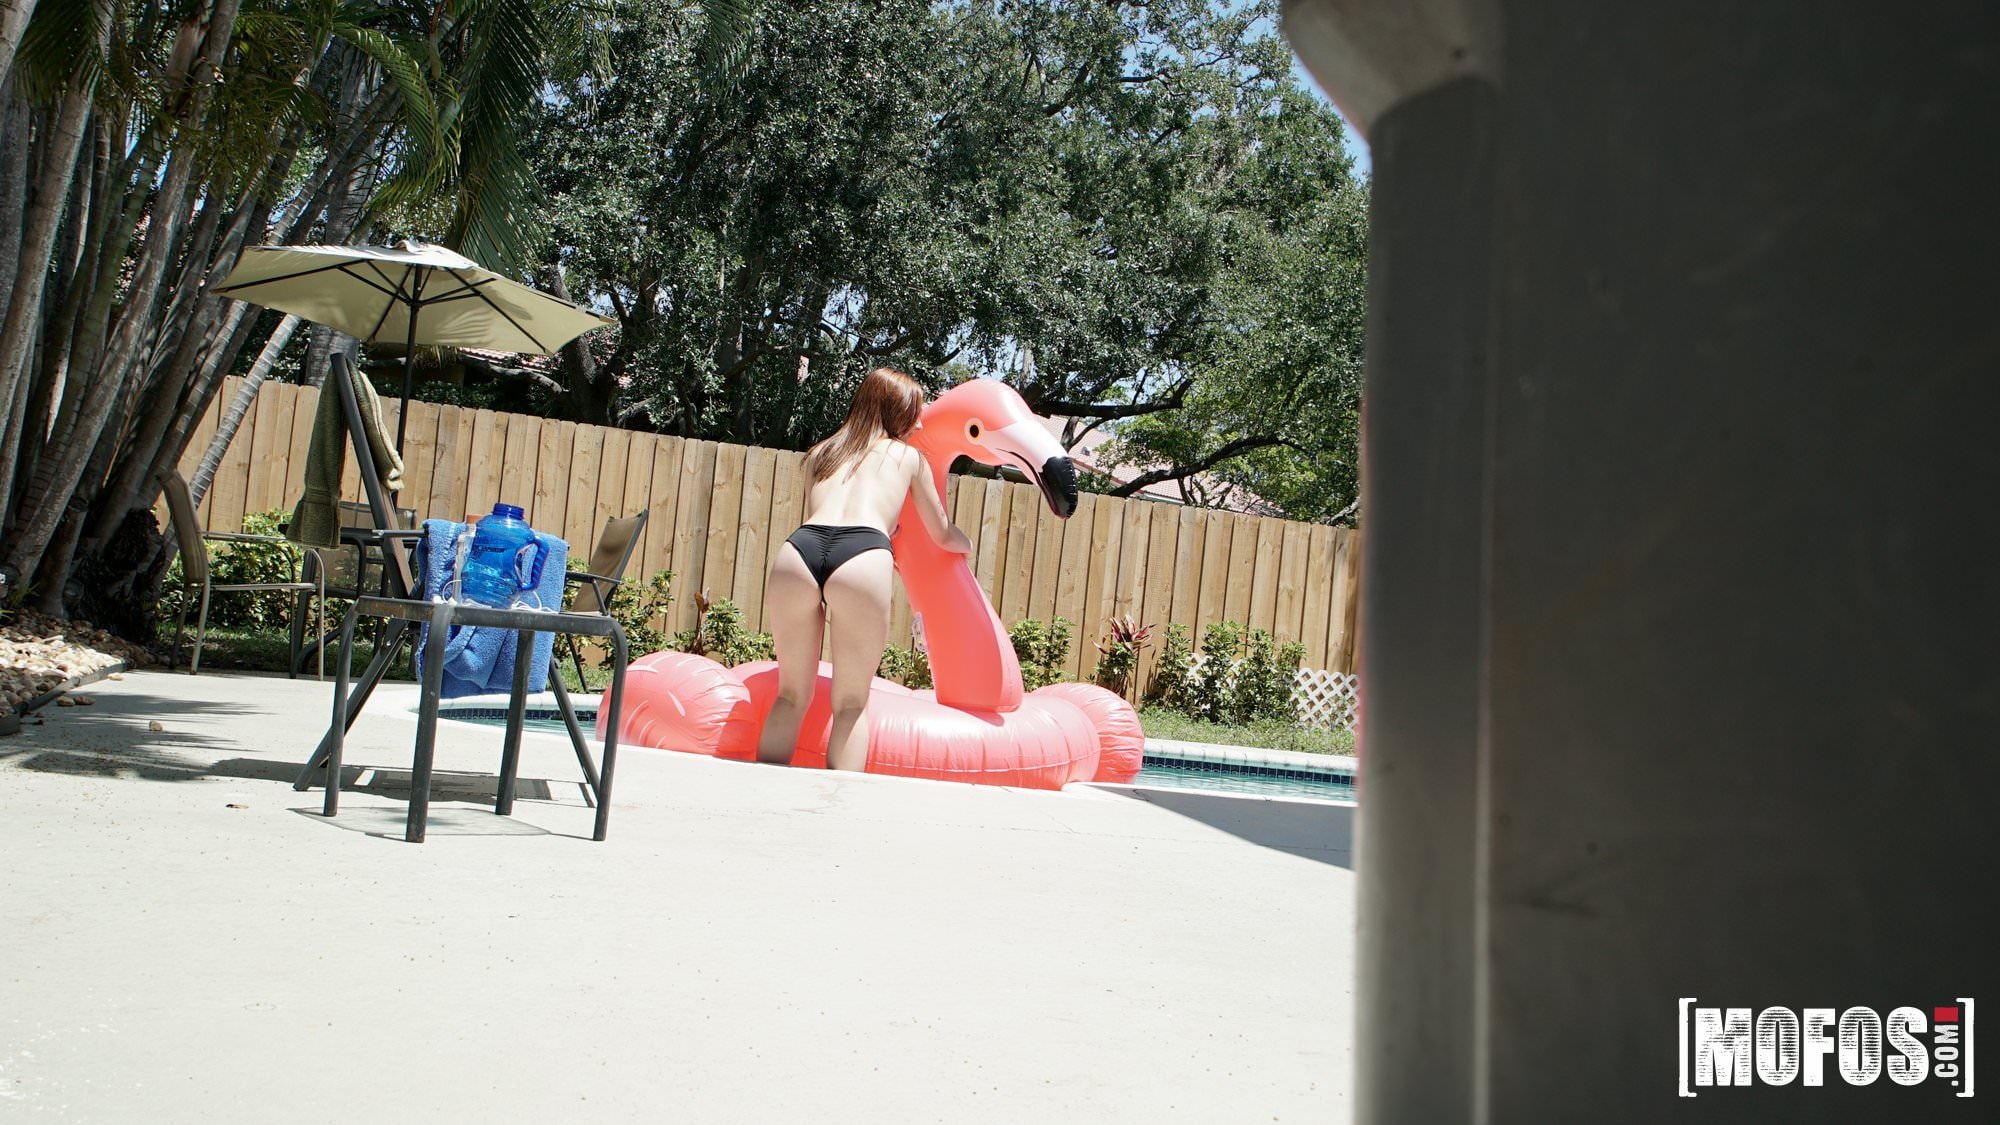 Mofos 'Poolside Peeking' starring Scarlett Johnson (Photo 12)